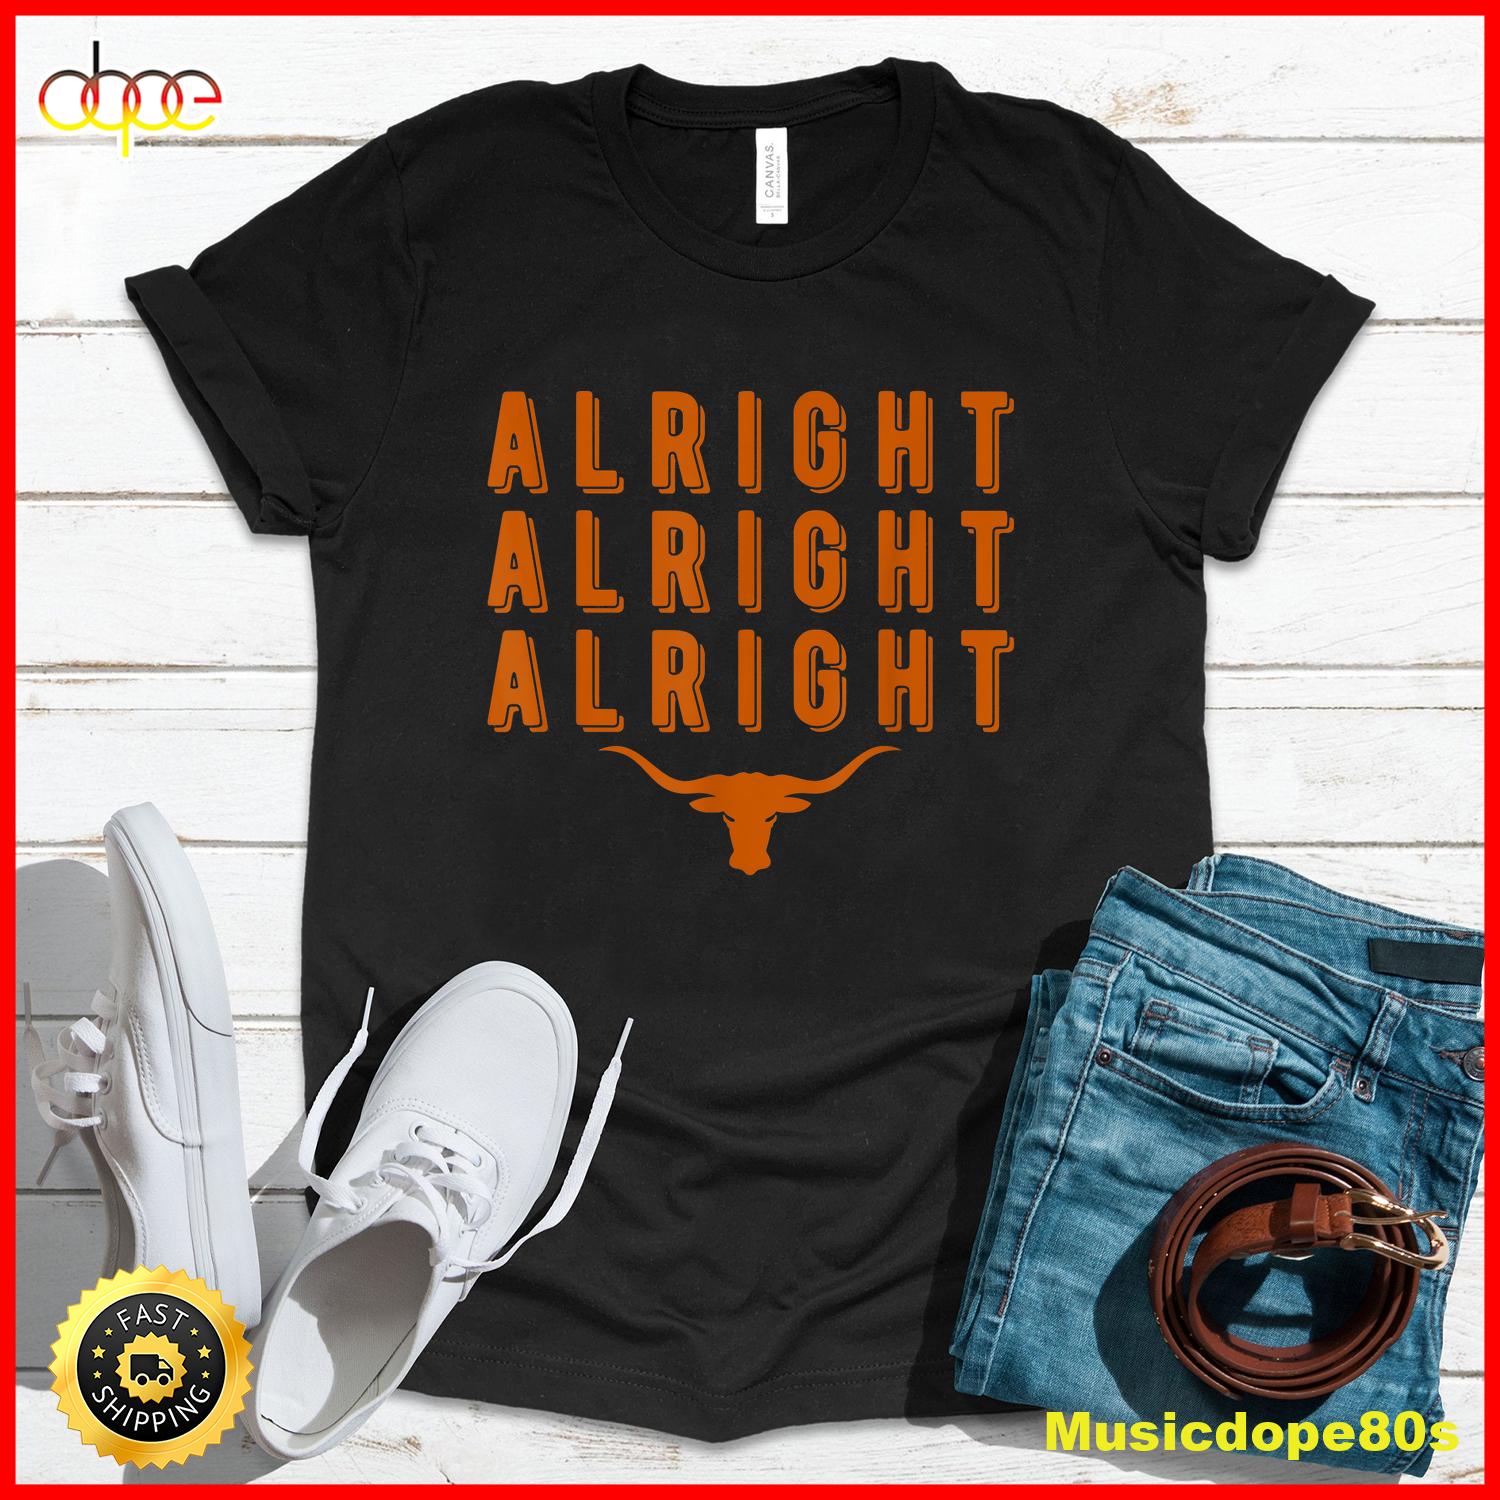 Alright Alright Alright Texas Shirt Texas Pride State USA T Shirt